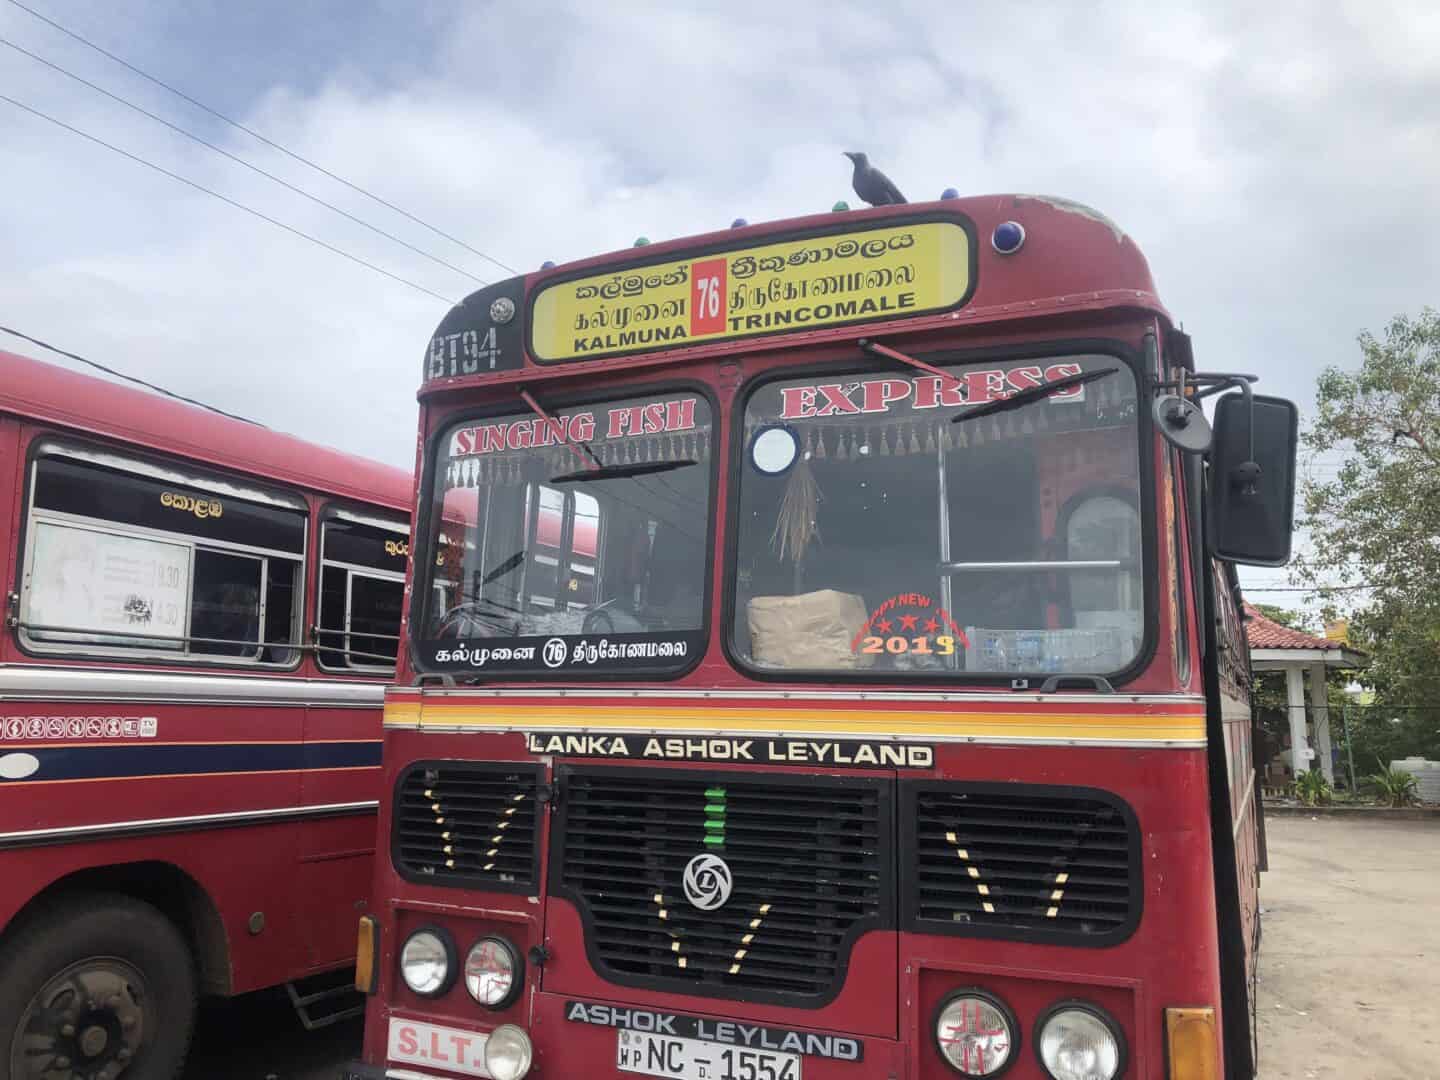 Cost of Travel in Sri Lanka, red local bus in Sri Lanka